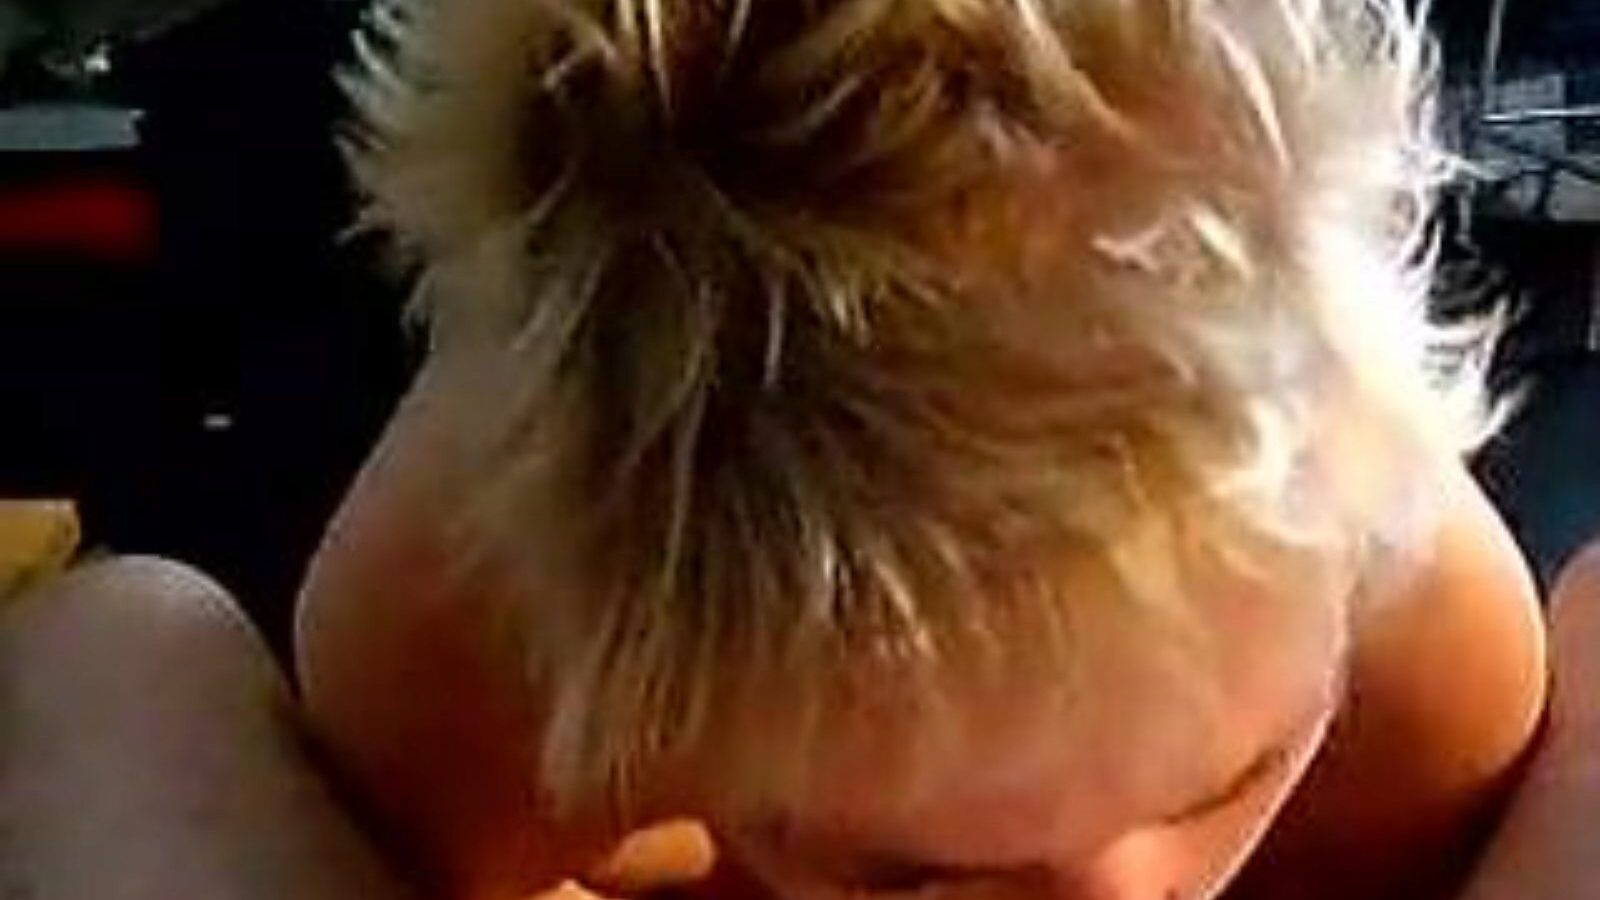 leuke dame: video porno de casă și fată bătrână a6 - xhamster urmărește filmul fuckfest leuke dame gratis pe xhamster, cu cea mai tare colecție de concerte de clipuri pornografice olandeze de casă, bătrâne și suge